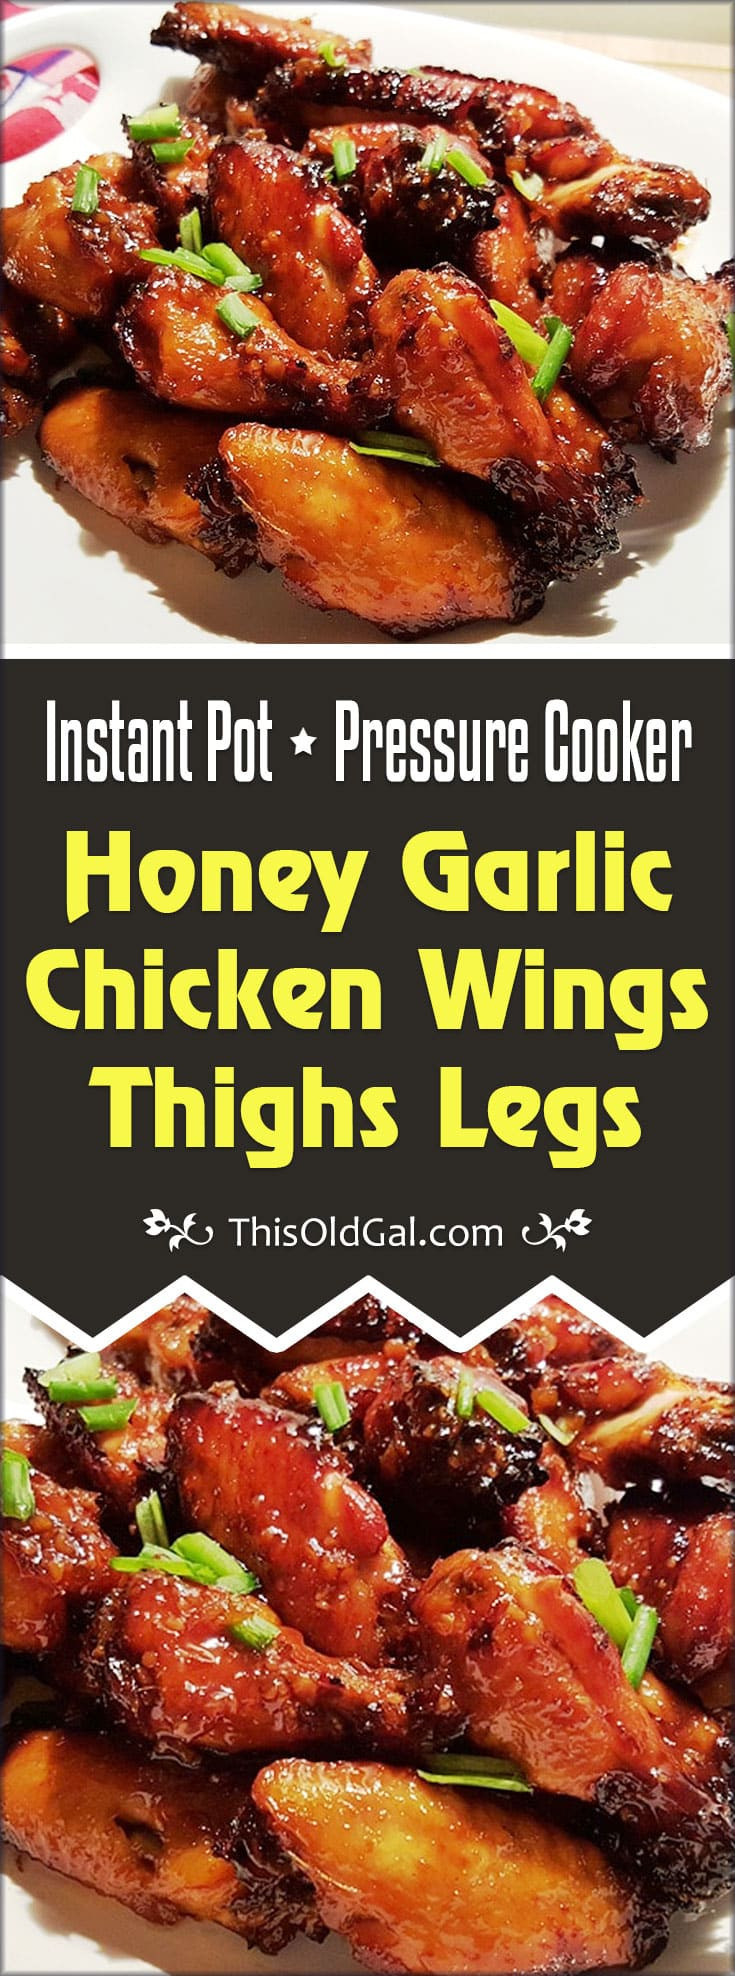 Pressure Cooker Frozen Chicken Thighs
 Pressure Cooker Honey Garlic Chicken Wings Thighs Legs